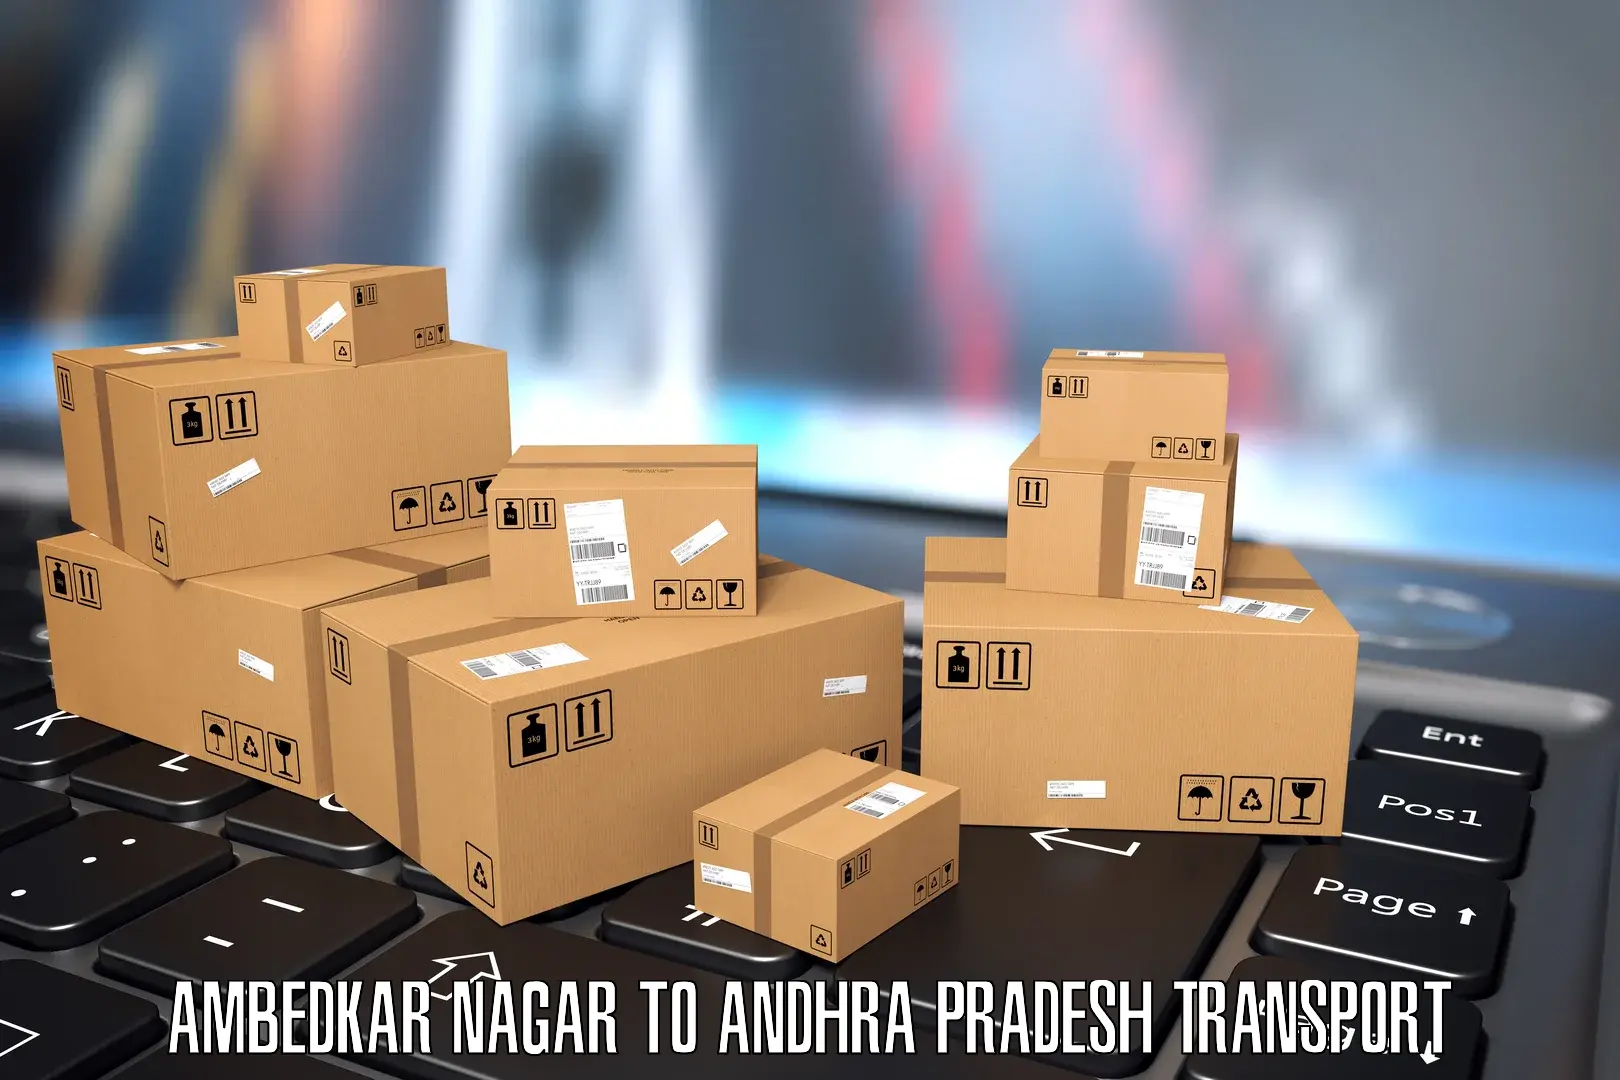 Transportation services Ambedkar Nagar to Andhra Pradesh